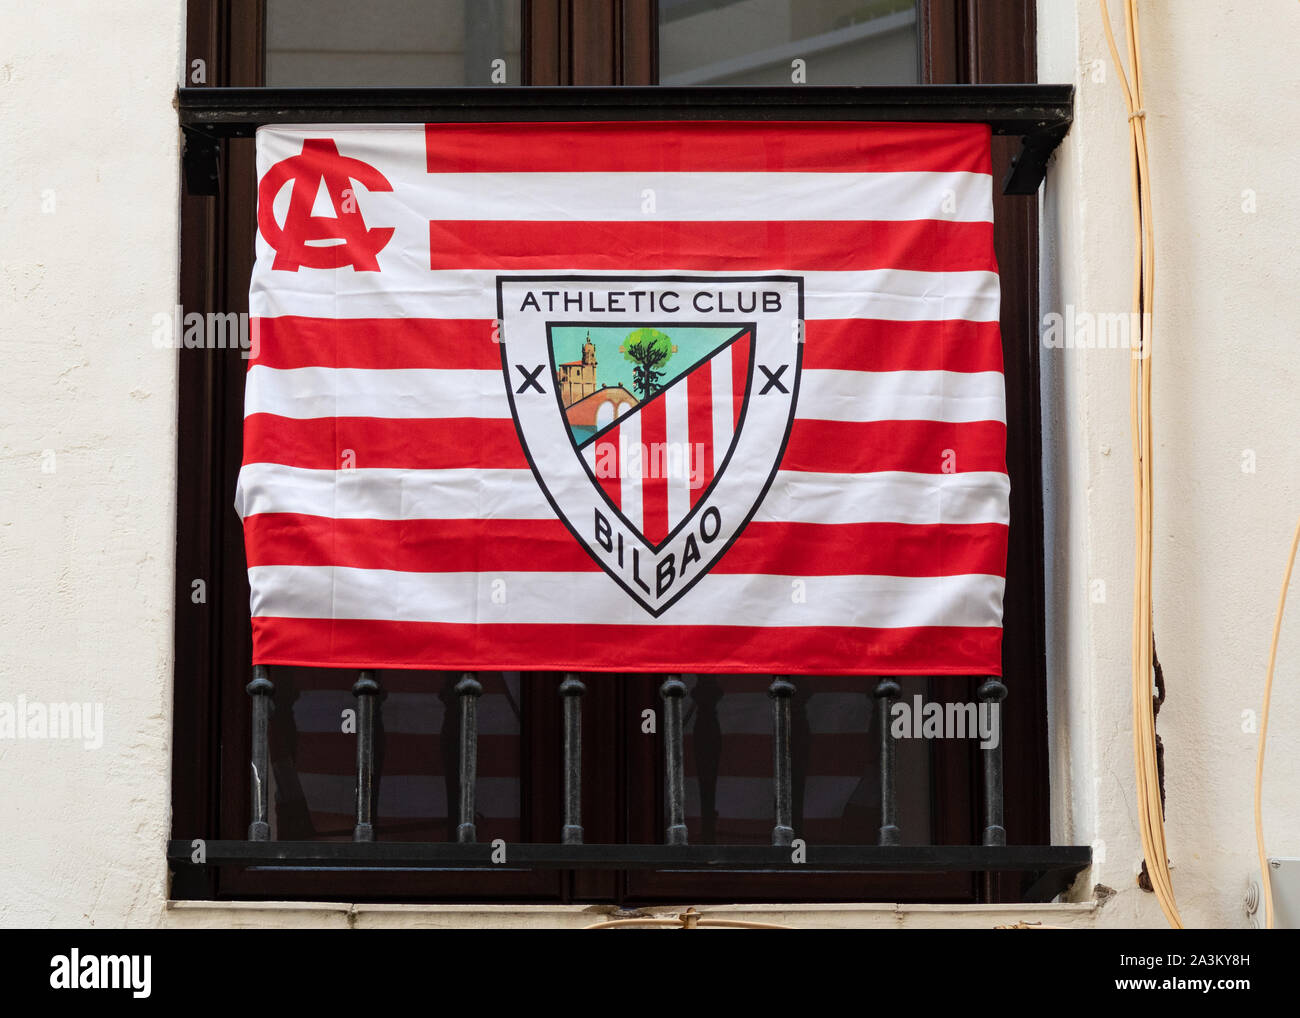 Athletic Club de Bilbao flag Banque D'Images